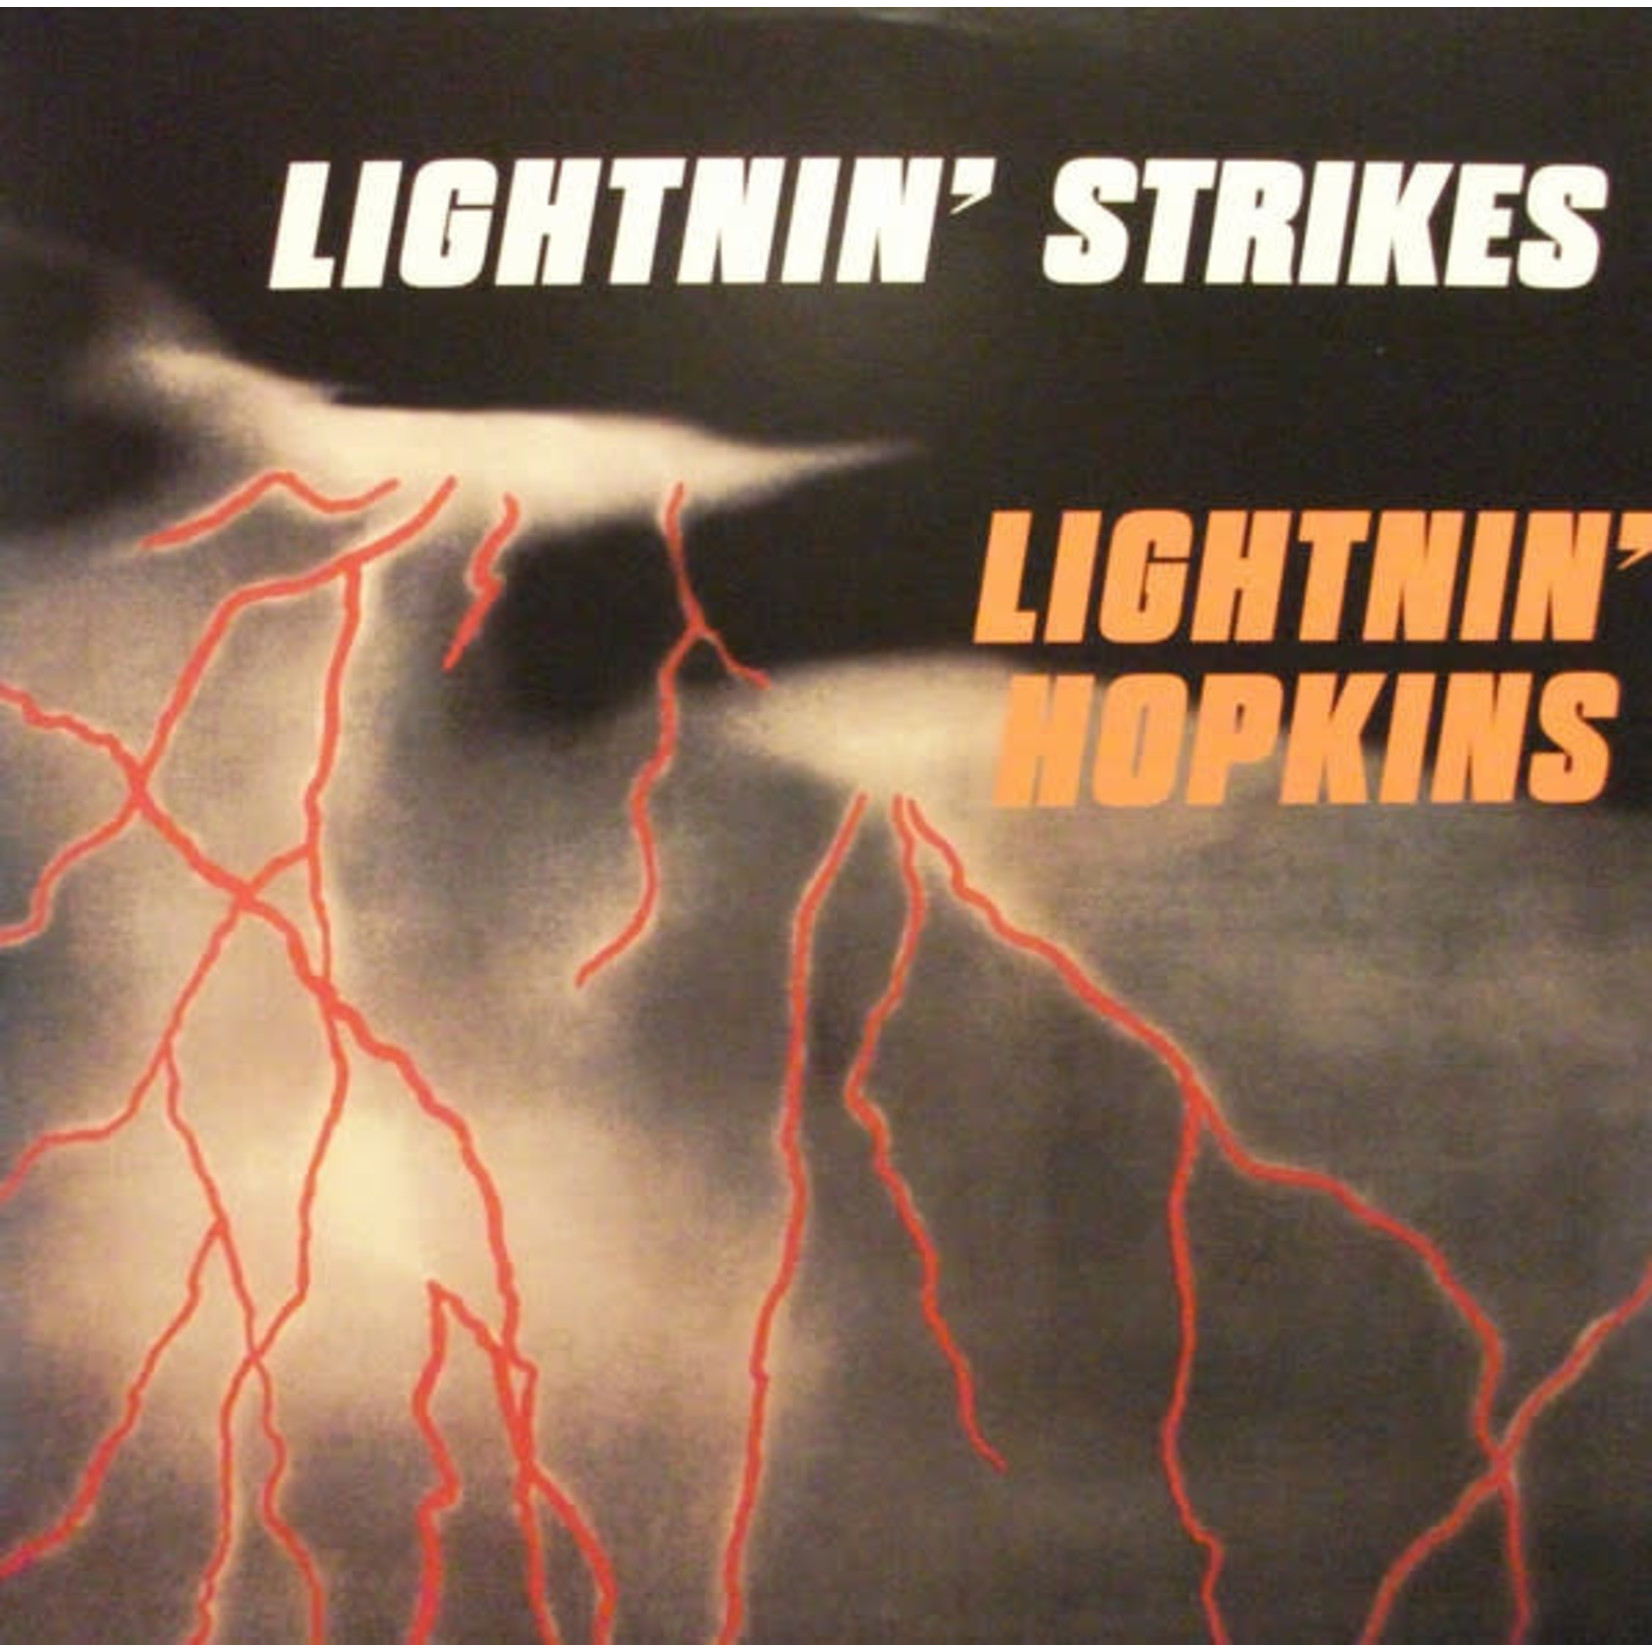 DOL Lightnin Hopkins - Lightnin' Strikes (LP)